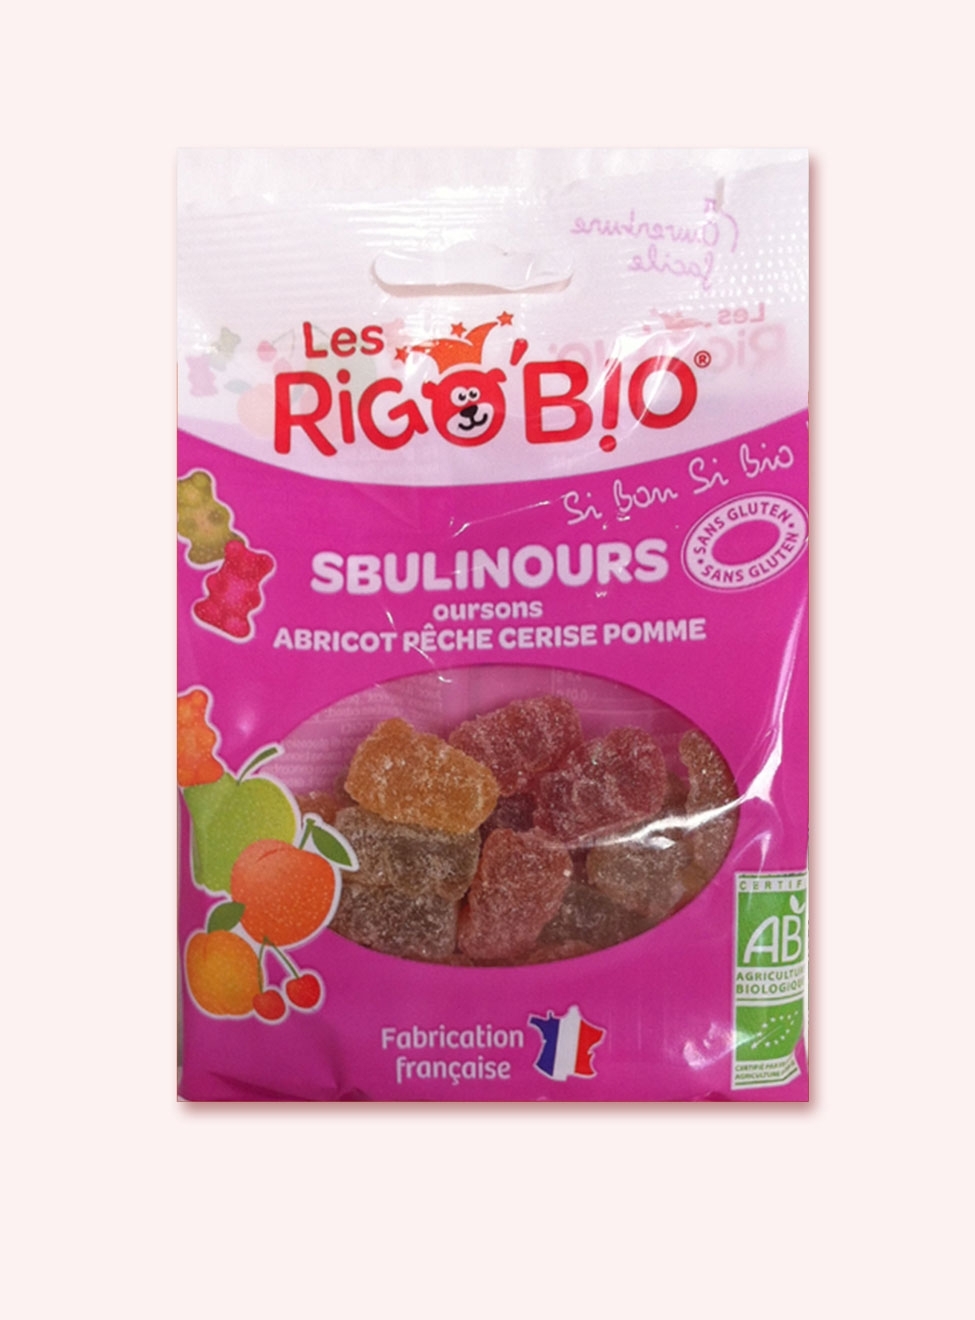 RIGOBIO Sbulinours Fruits- sachet- Origine France- réf.2882 